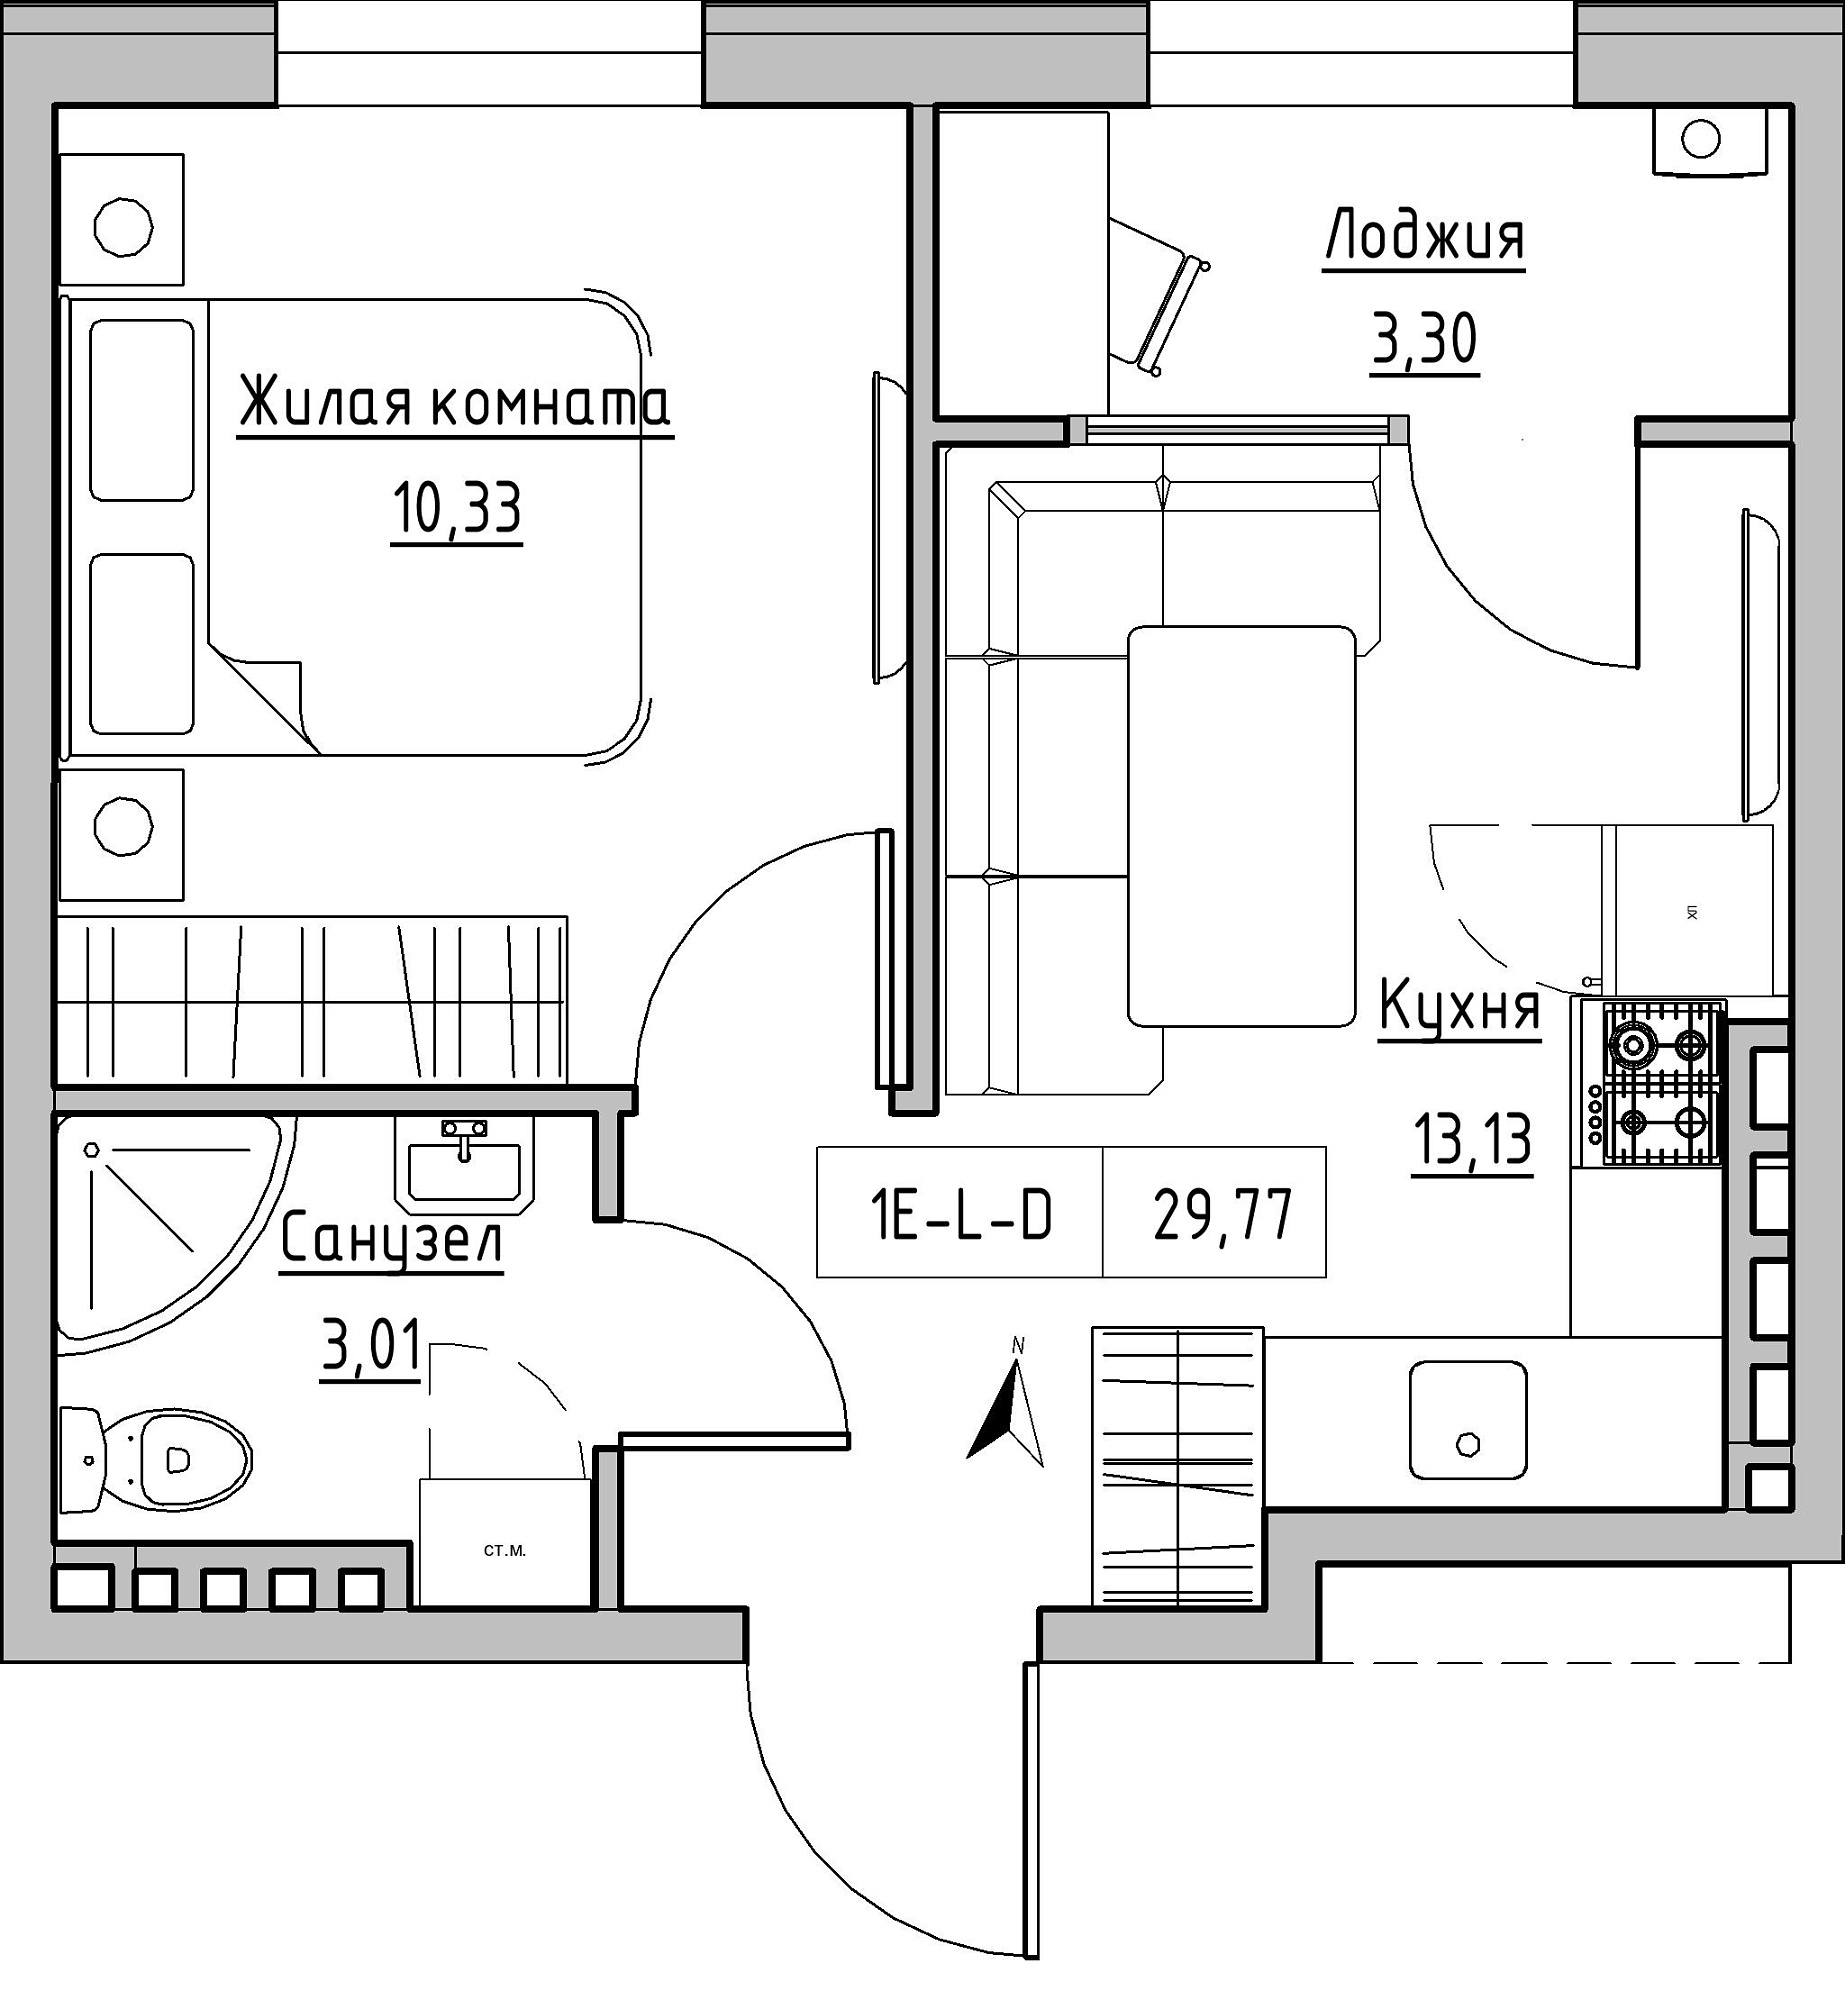 Планування 1-к квартира площею 29.77м2, KS-024-04/0001.